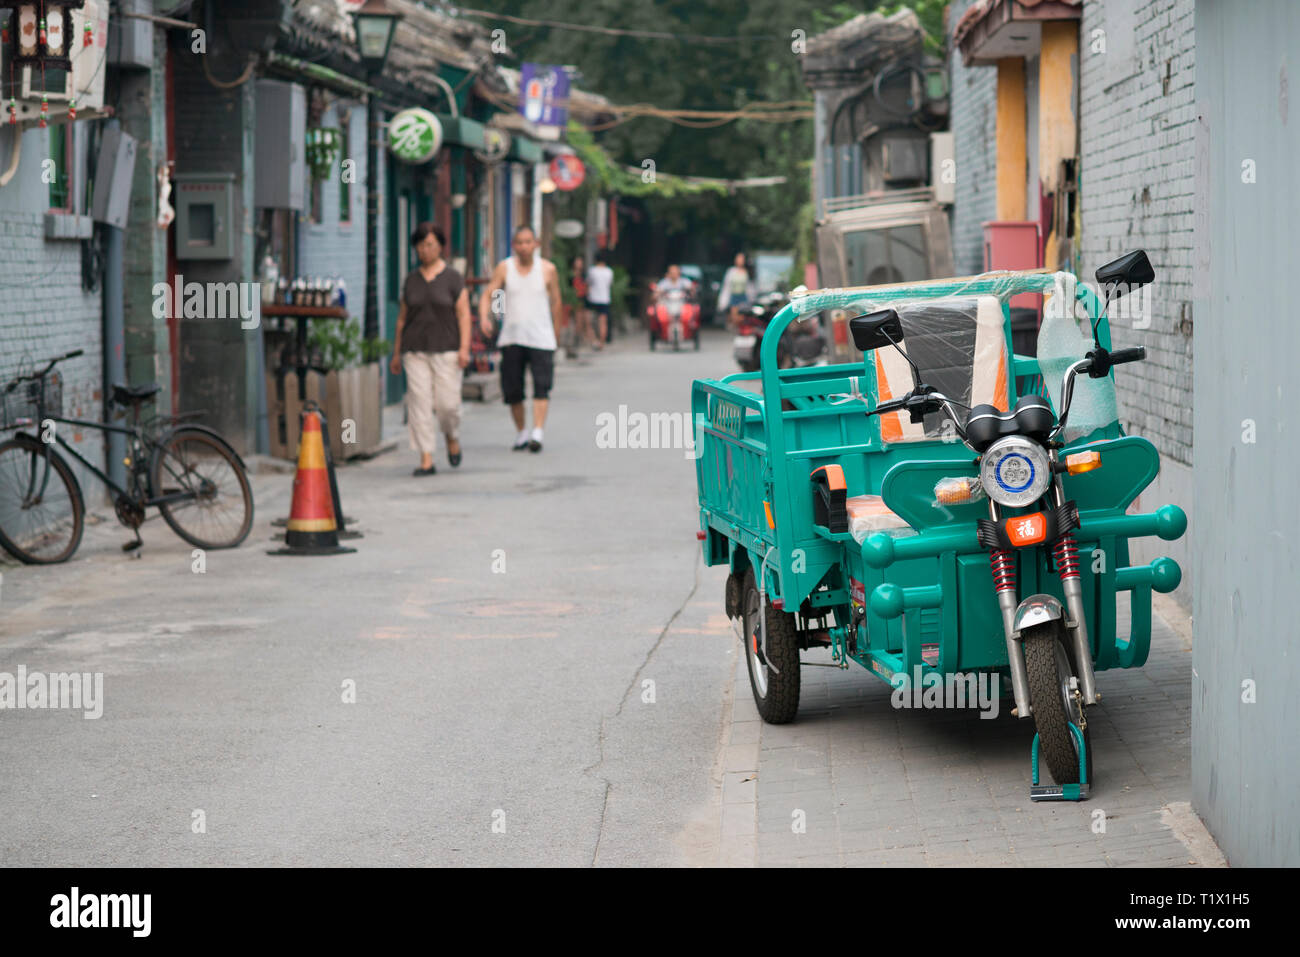 Pechino, Cina - 08 04 2016: un triciclo per adulti, in bicicletta con tre ruote in un hutong, in una strada di Pechino, Cina Foto Stock